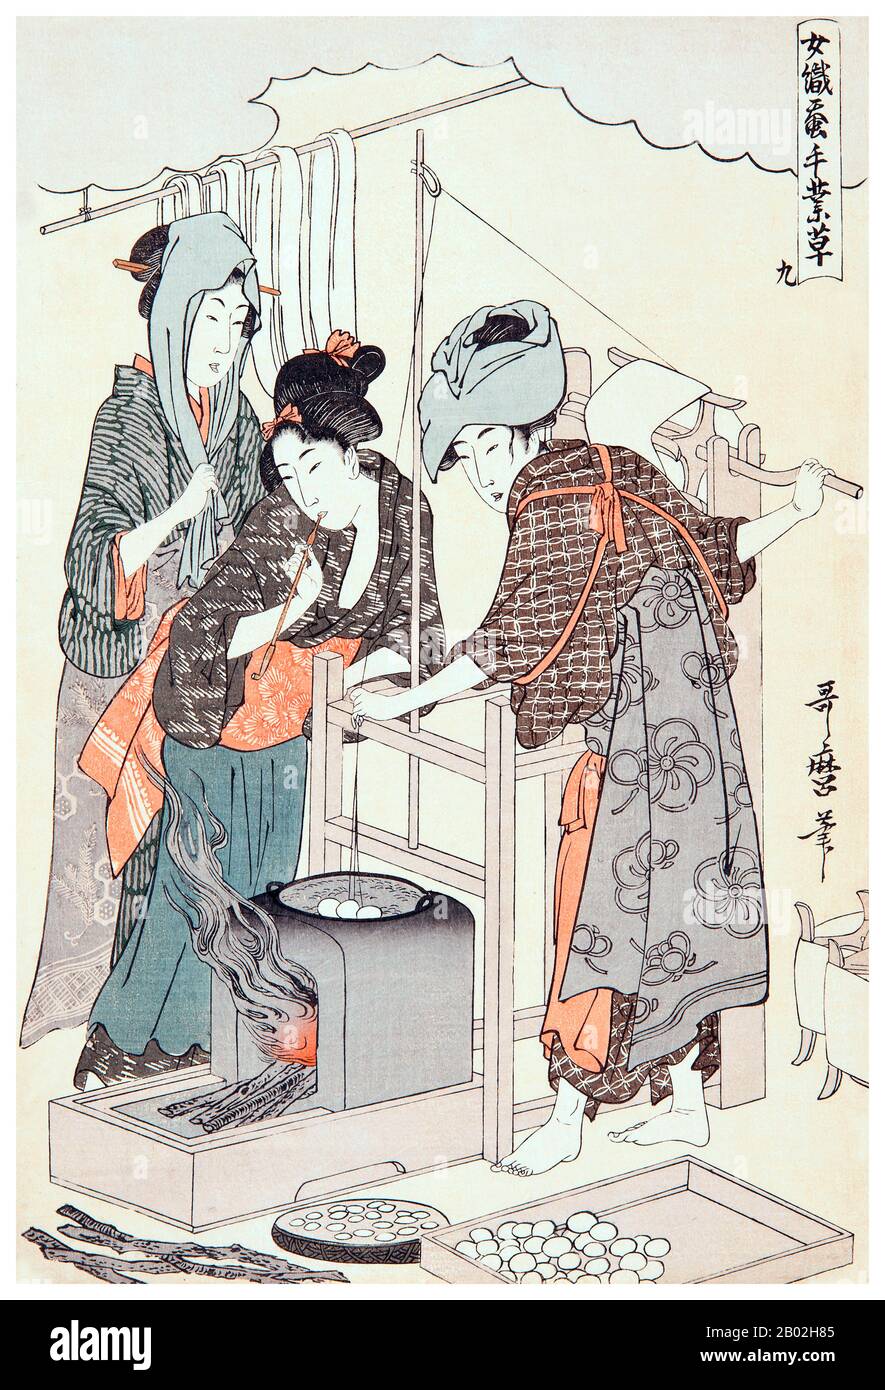 9. « enrouler le fil », représentant une femme qui enroule le fil tiré de cocons bouillant dans une casserole d'eau, deux autres femmes regardant la scène. Kitagawa Utamaro (env. 1753 - 31 octobre 1806) était un peintre et graveur japonais, considéré comme l'un des plus grands artistes de gravures de bois (ukiyo-e). Il est surtout connu pour ses études magistralement composées de femmes, connues sous le nom de bijinga. Il a également produit des études sur la nature, notamment des livres illustrés d'insectes. Banque D'Images